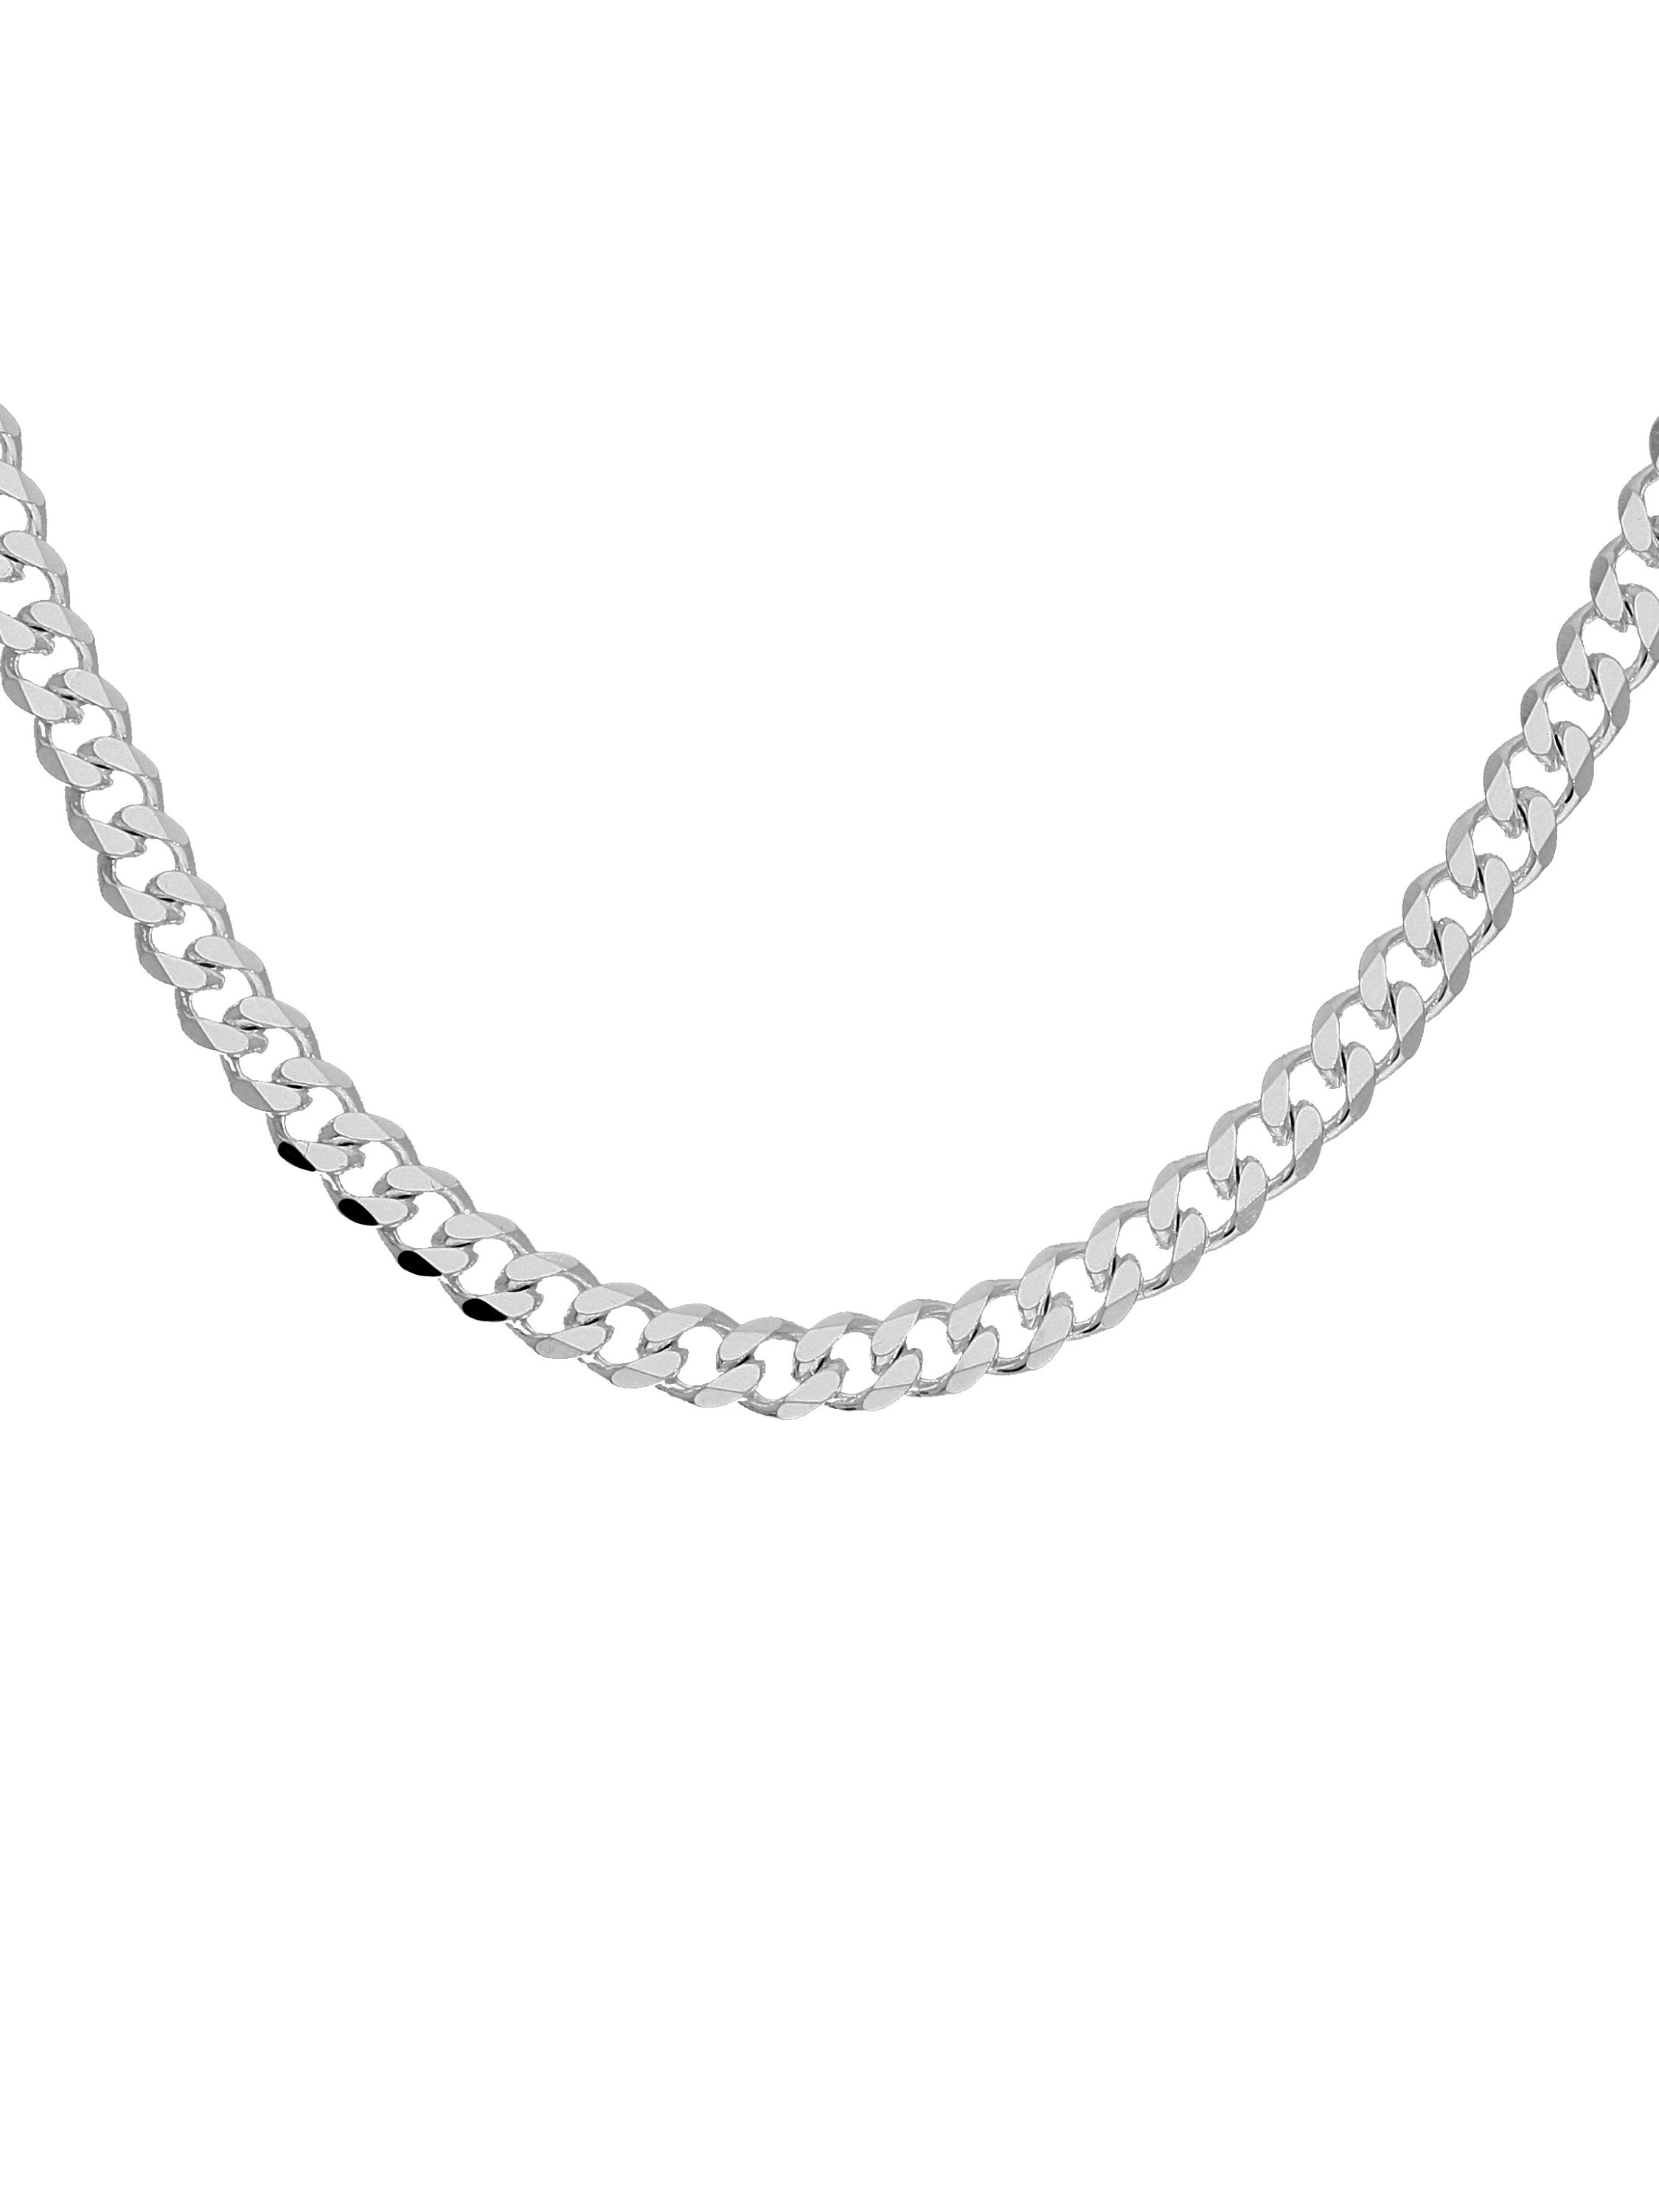 Hemshire45 - Halskette Silber Damen ODER Herren Karabiner - Breite 4.5 mm